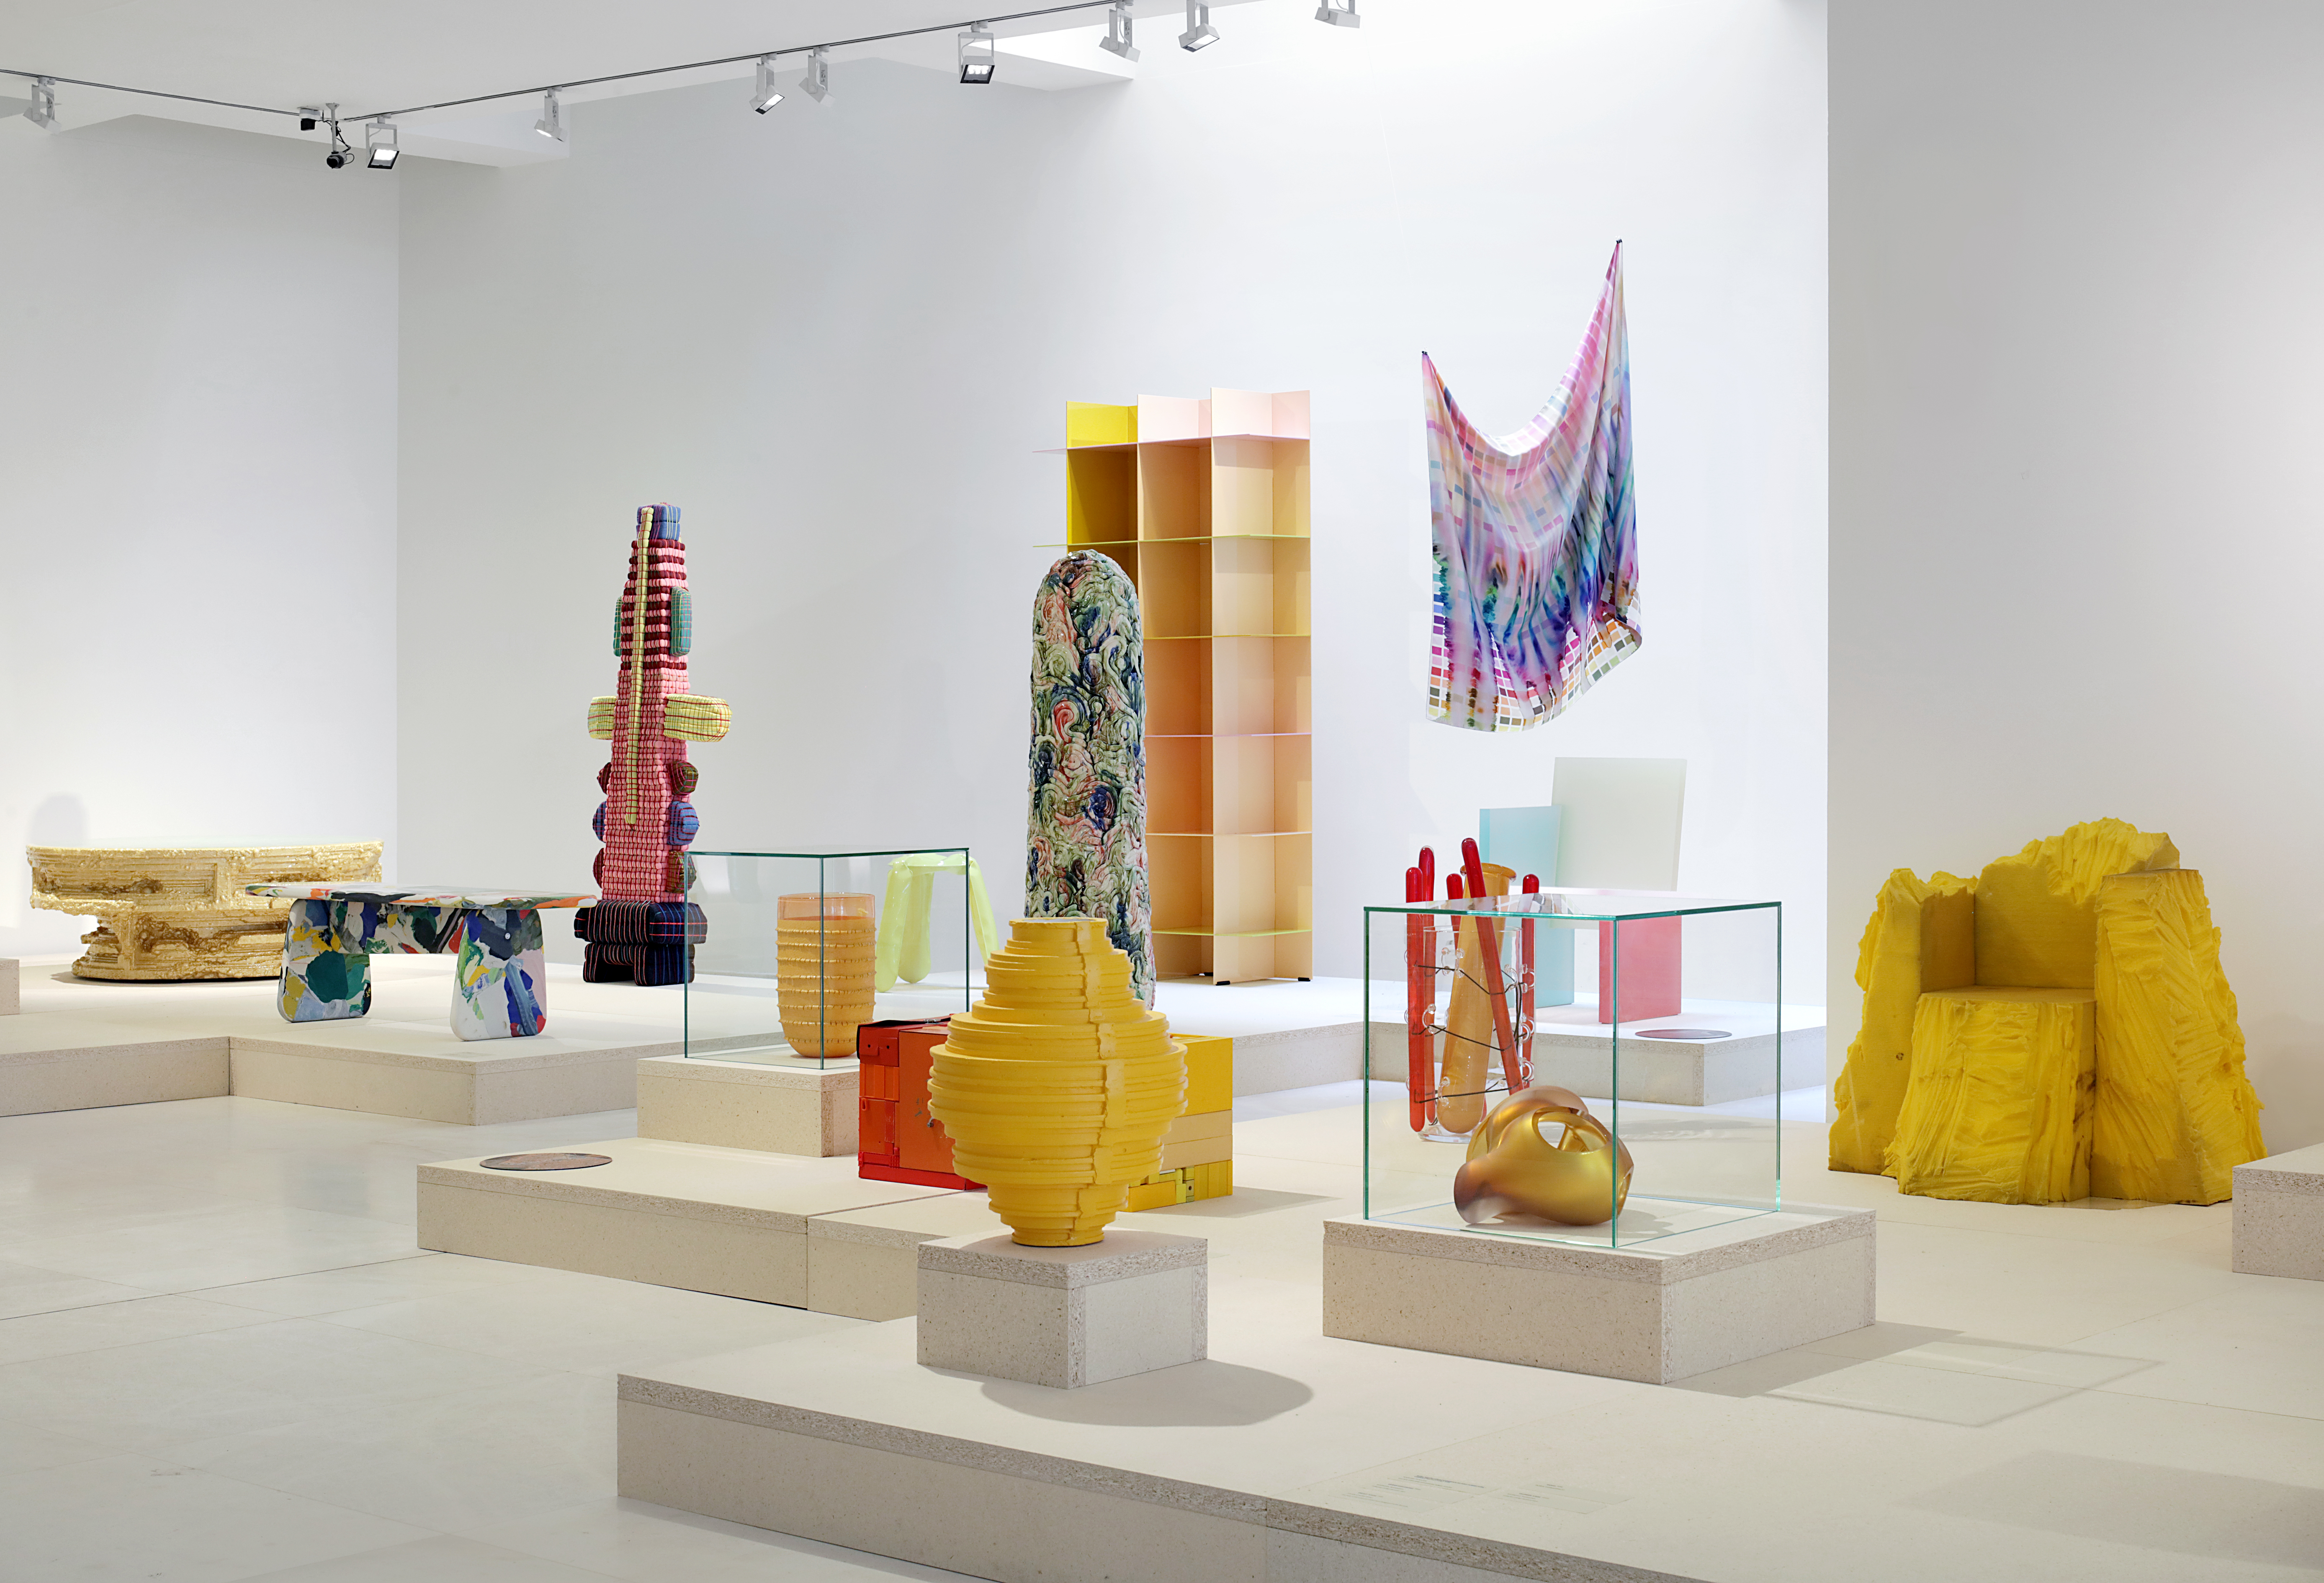 kleurrijke beelden uit tentoonstelling Kleureyck in het Designmuseum in Gent